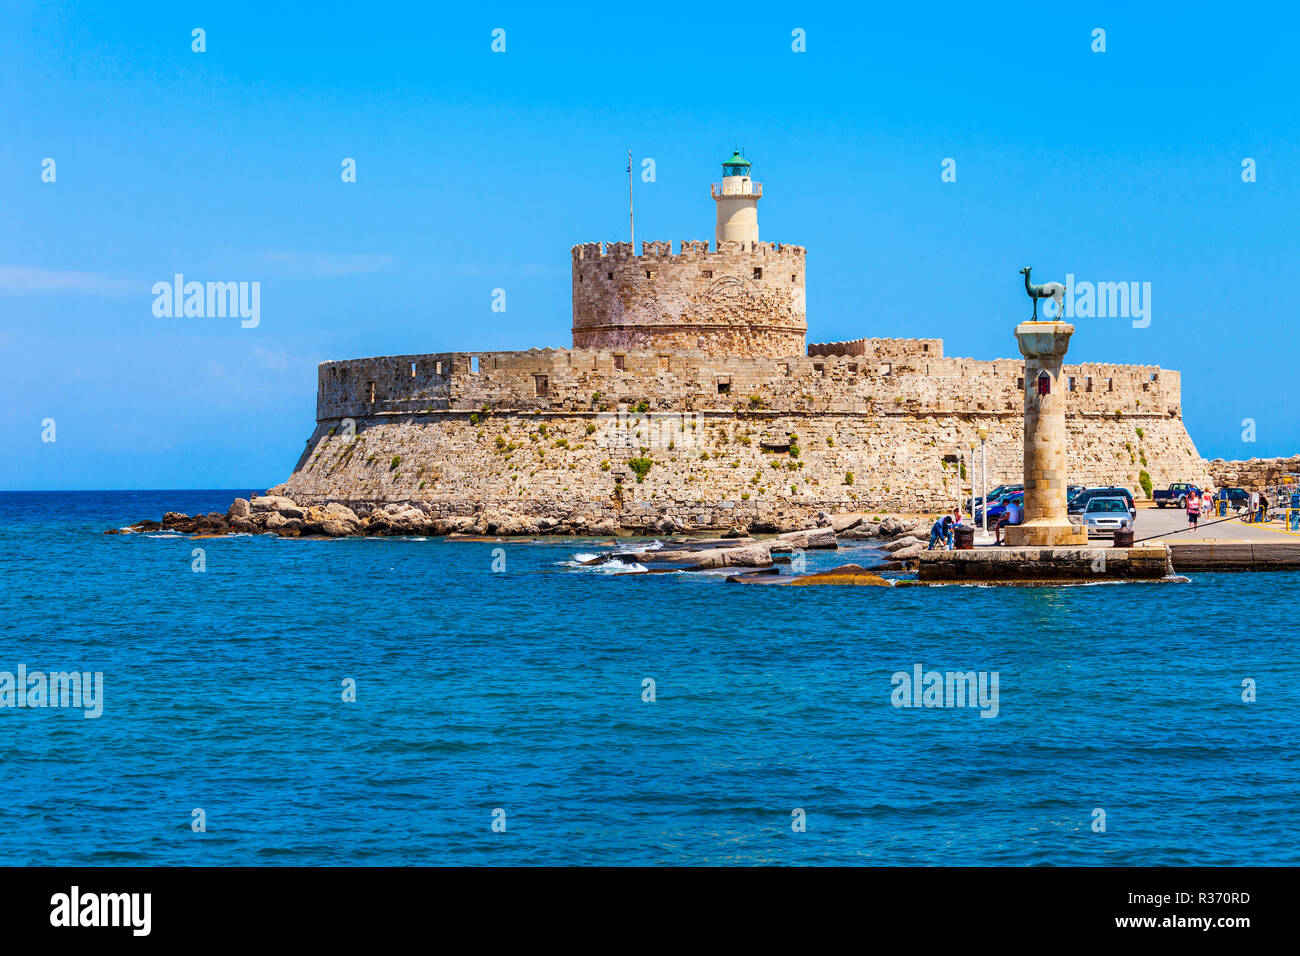 Fort Saint Nicolas garde les le port de Mandraki à Rhodes Ville, capitale de l'île de Rhodes en Grèce Banque D'Images